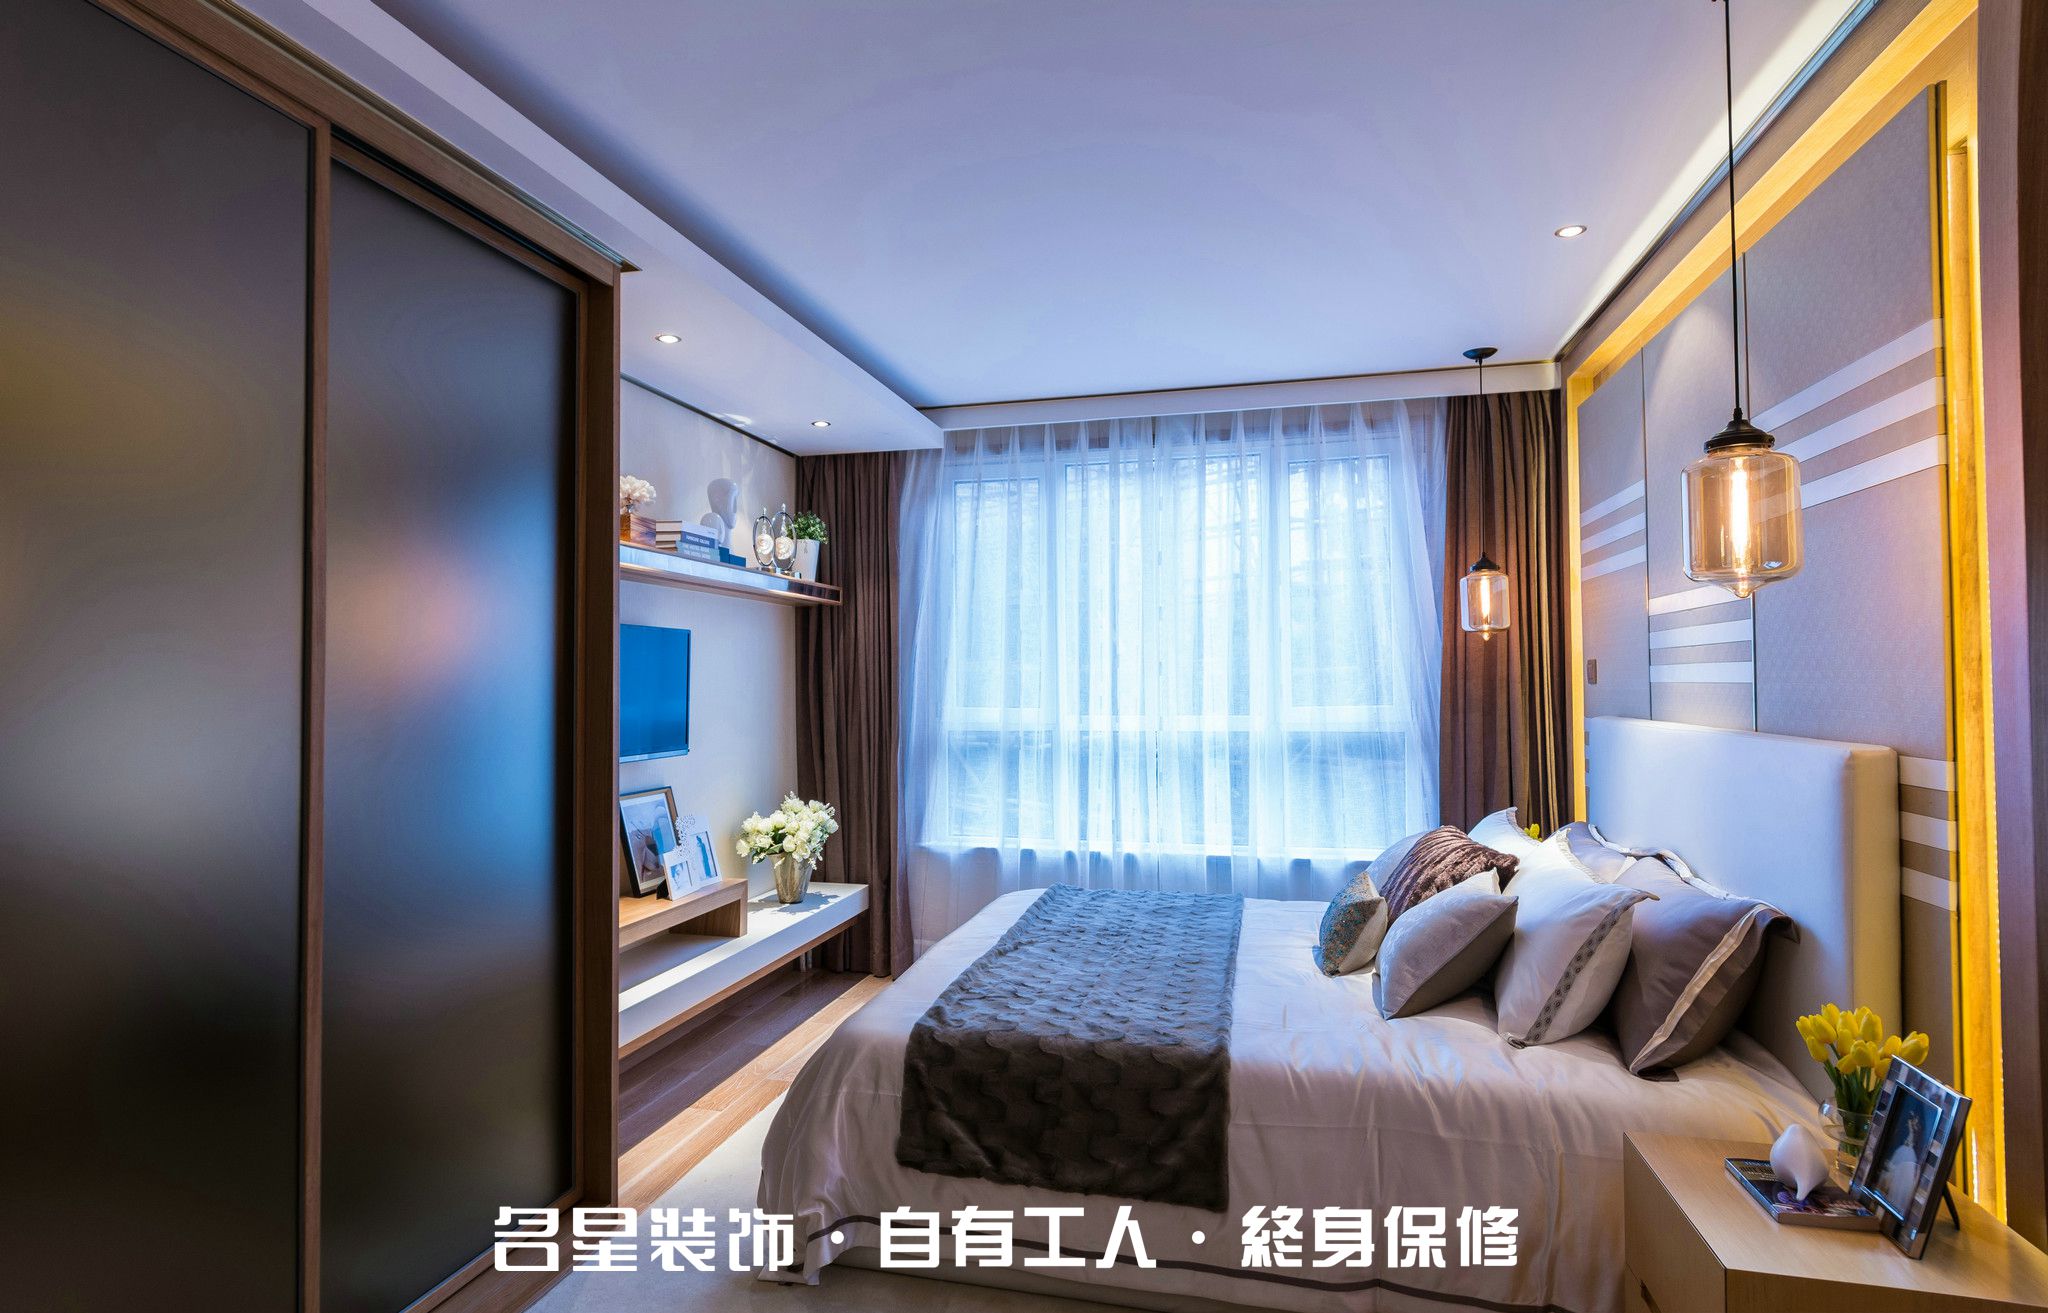 二居 美式 简约 卧室图片来自名星装饰在福星华府的分享